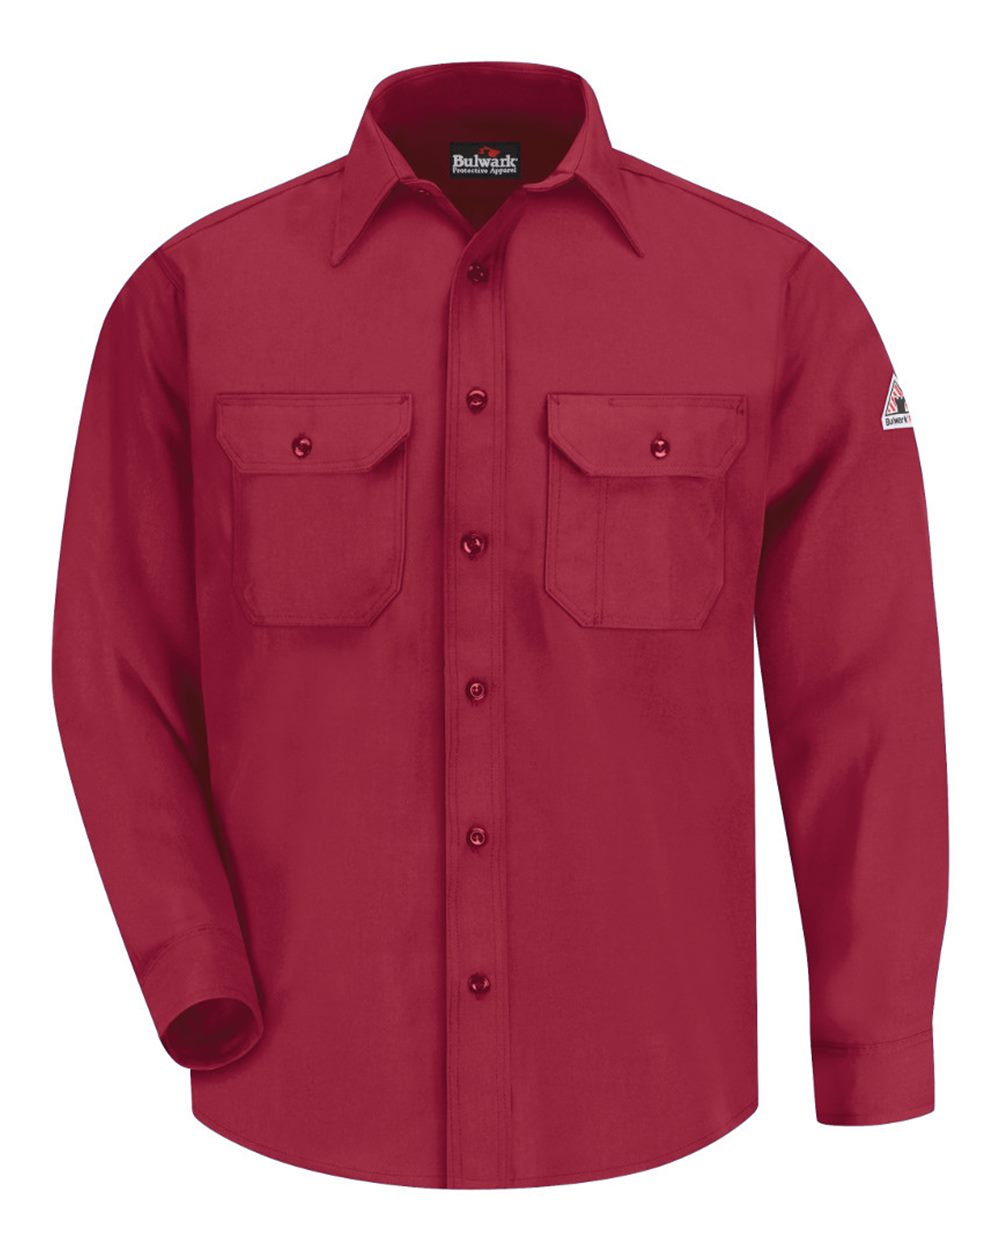 Uniform Shirt - Nomex® IIIA-Bulwark